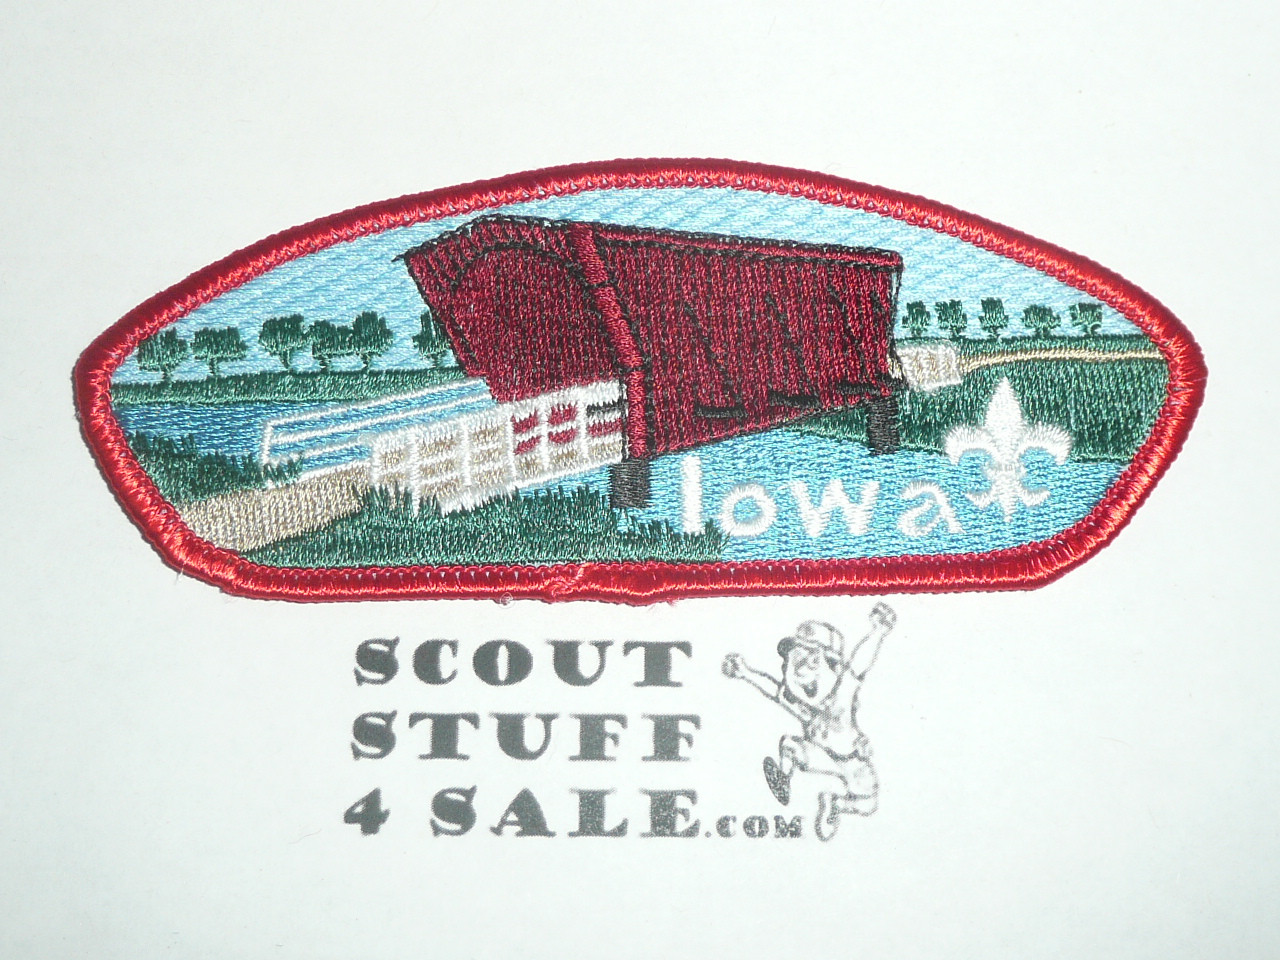 Mid-Iowa Council sa13 CSP - Scout